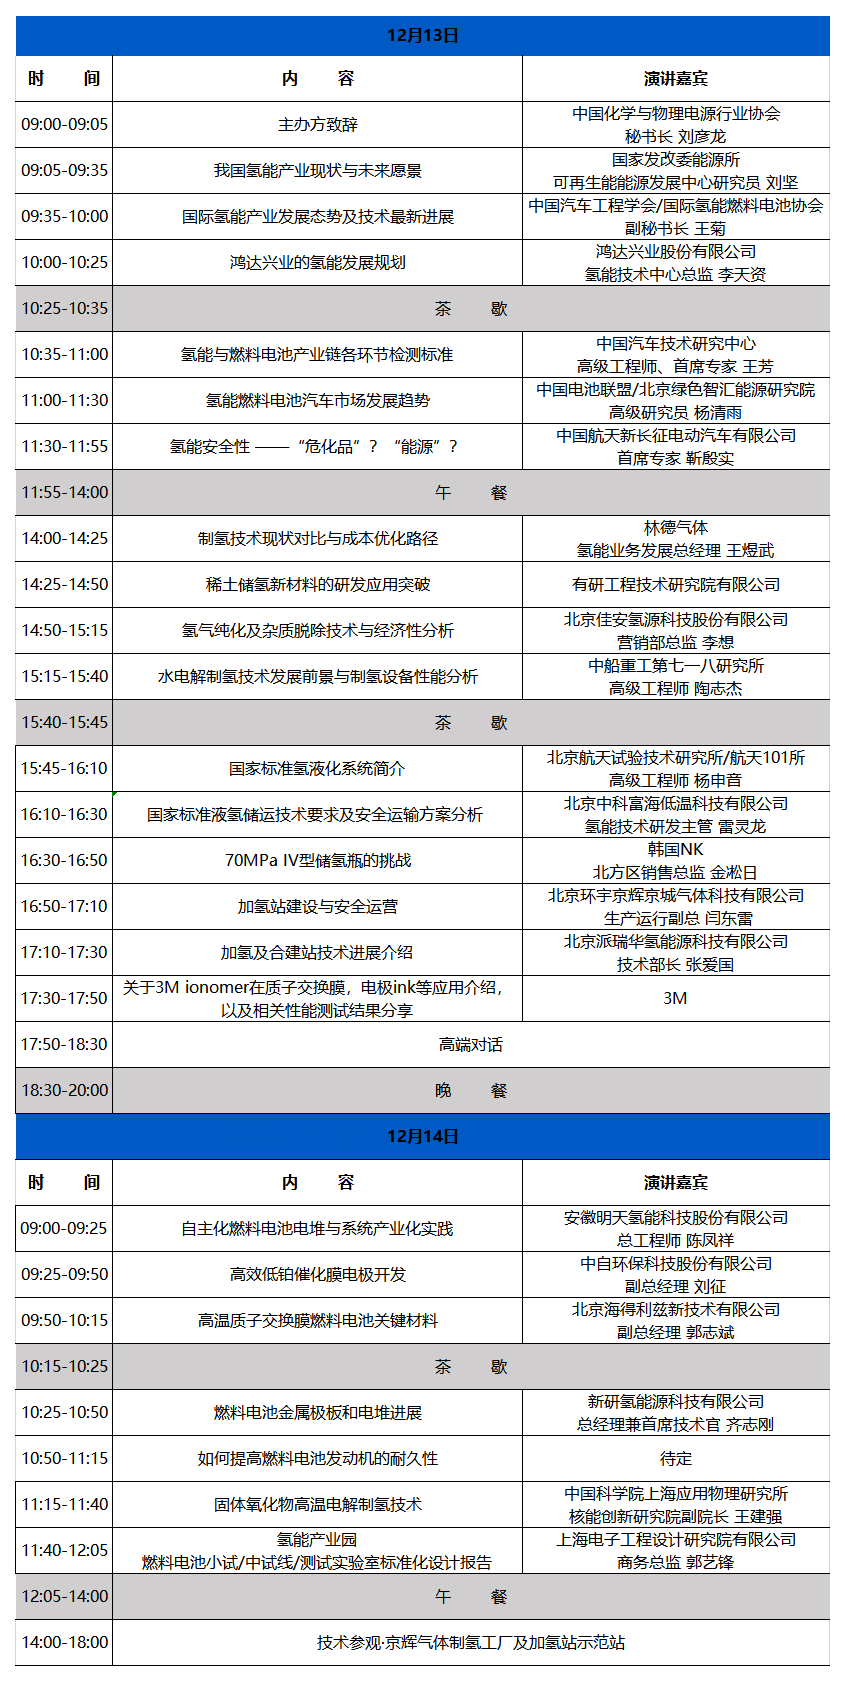 2019IHFCS丨第二届国际氢能及燃料电池产业发展技术峰会（北京）